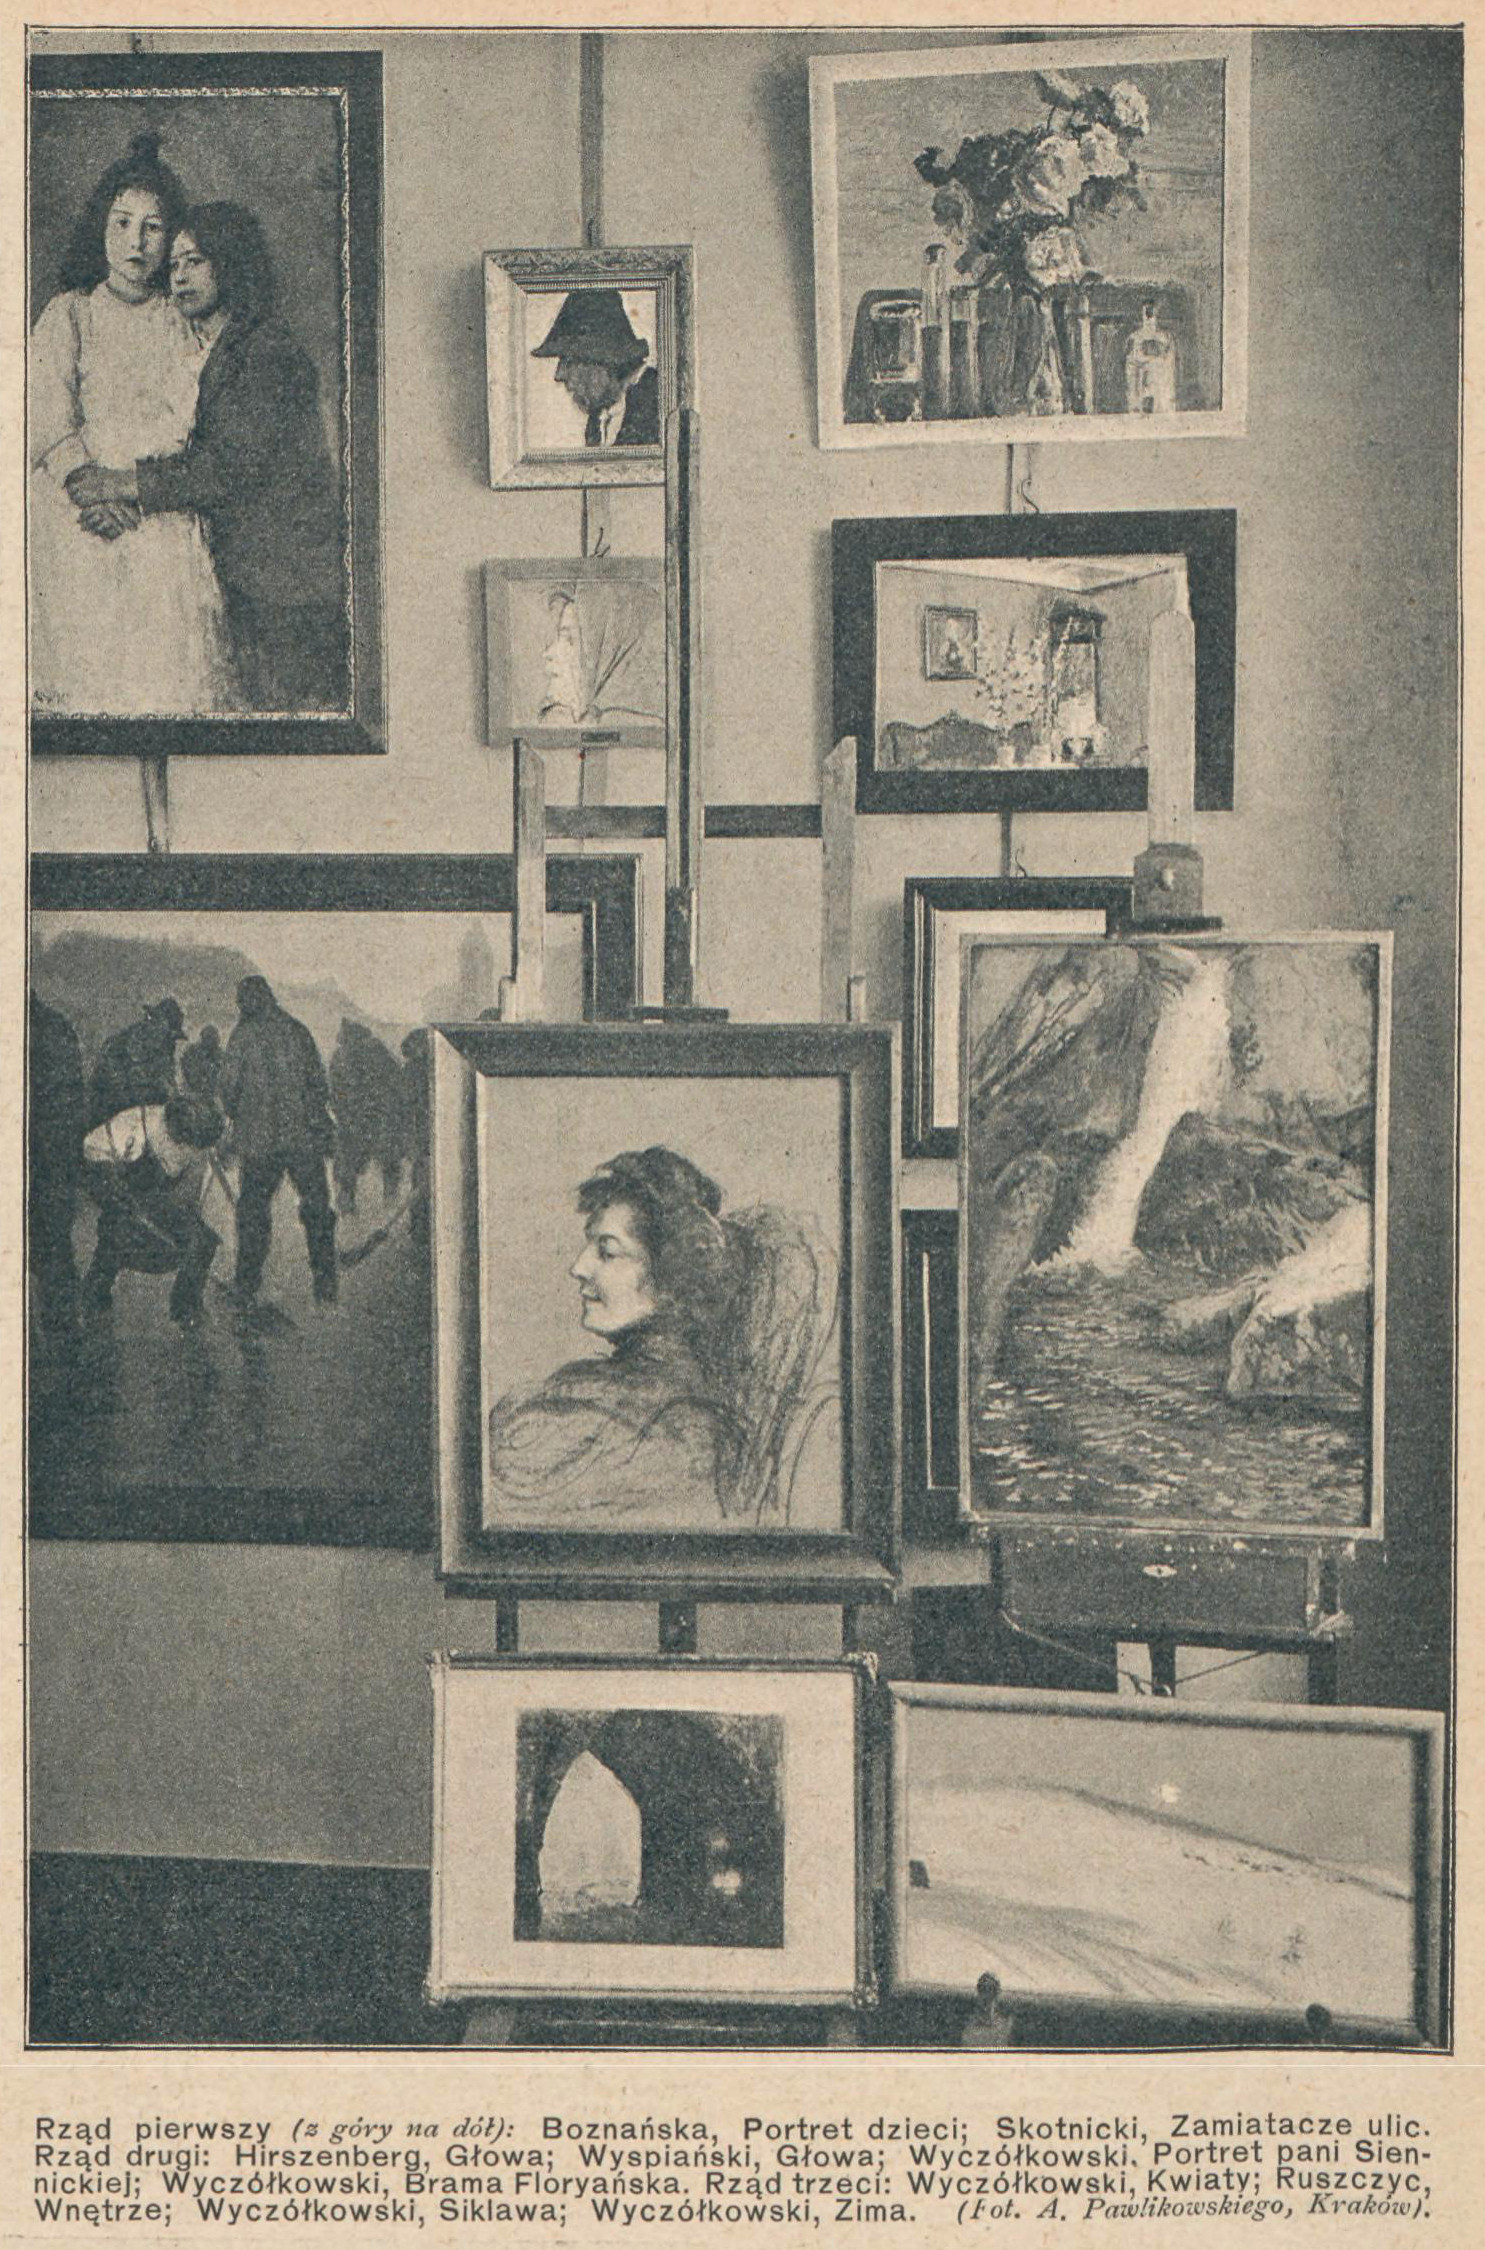 Wnętrze Salonu "Ars" w 1907 roku, źródło: "Świat" 1907, nr 38